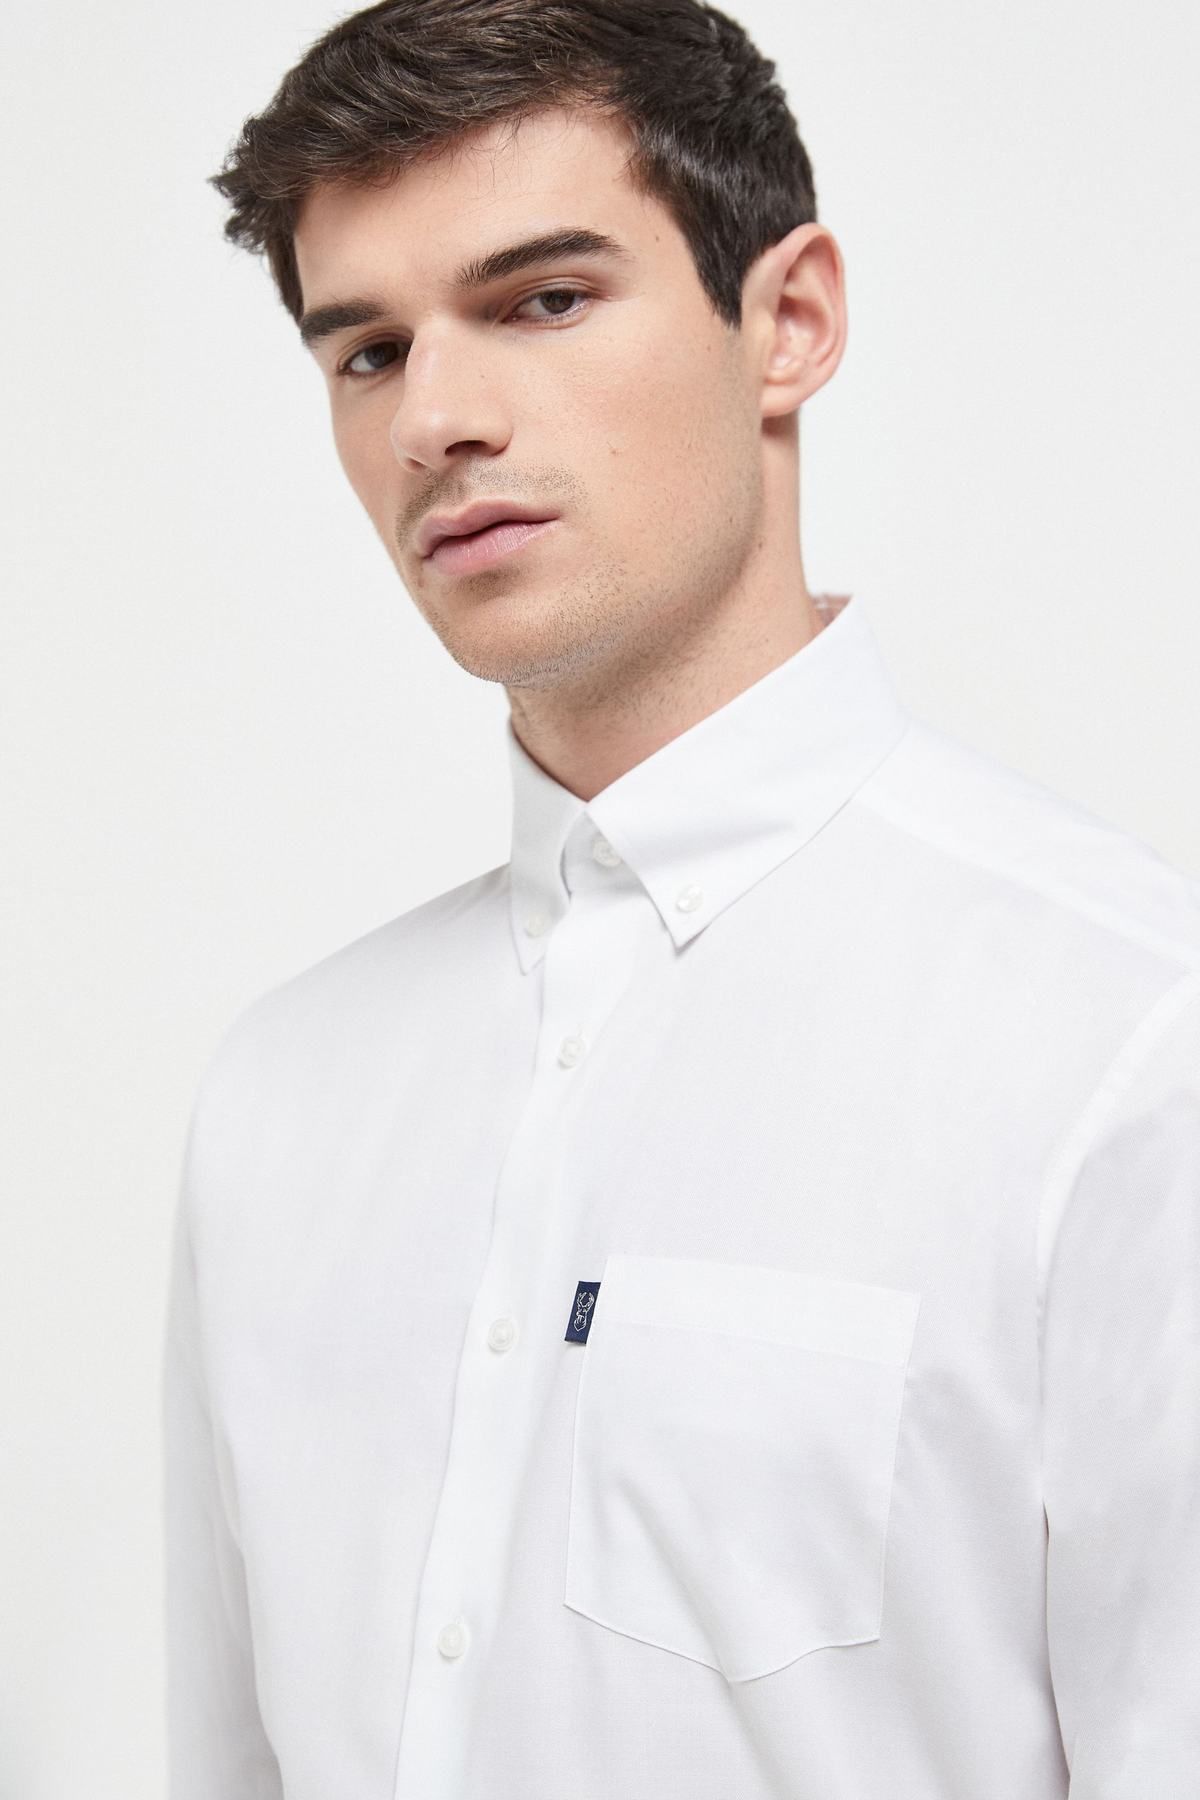 NEXT Easy Iron Button Down Oxford Shirt White Men Shirts